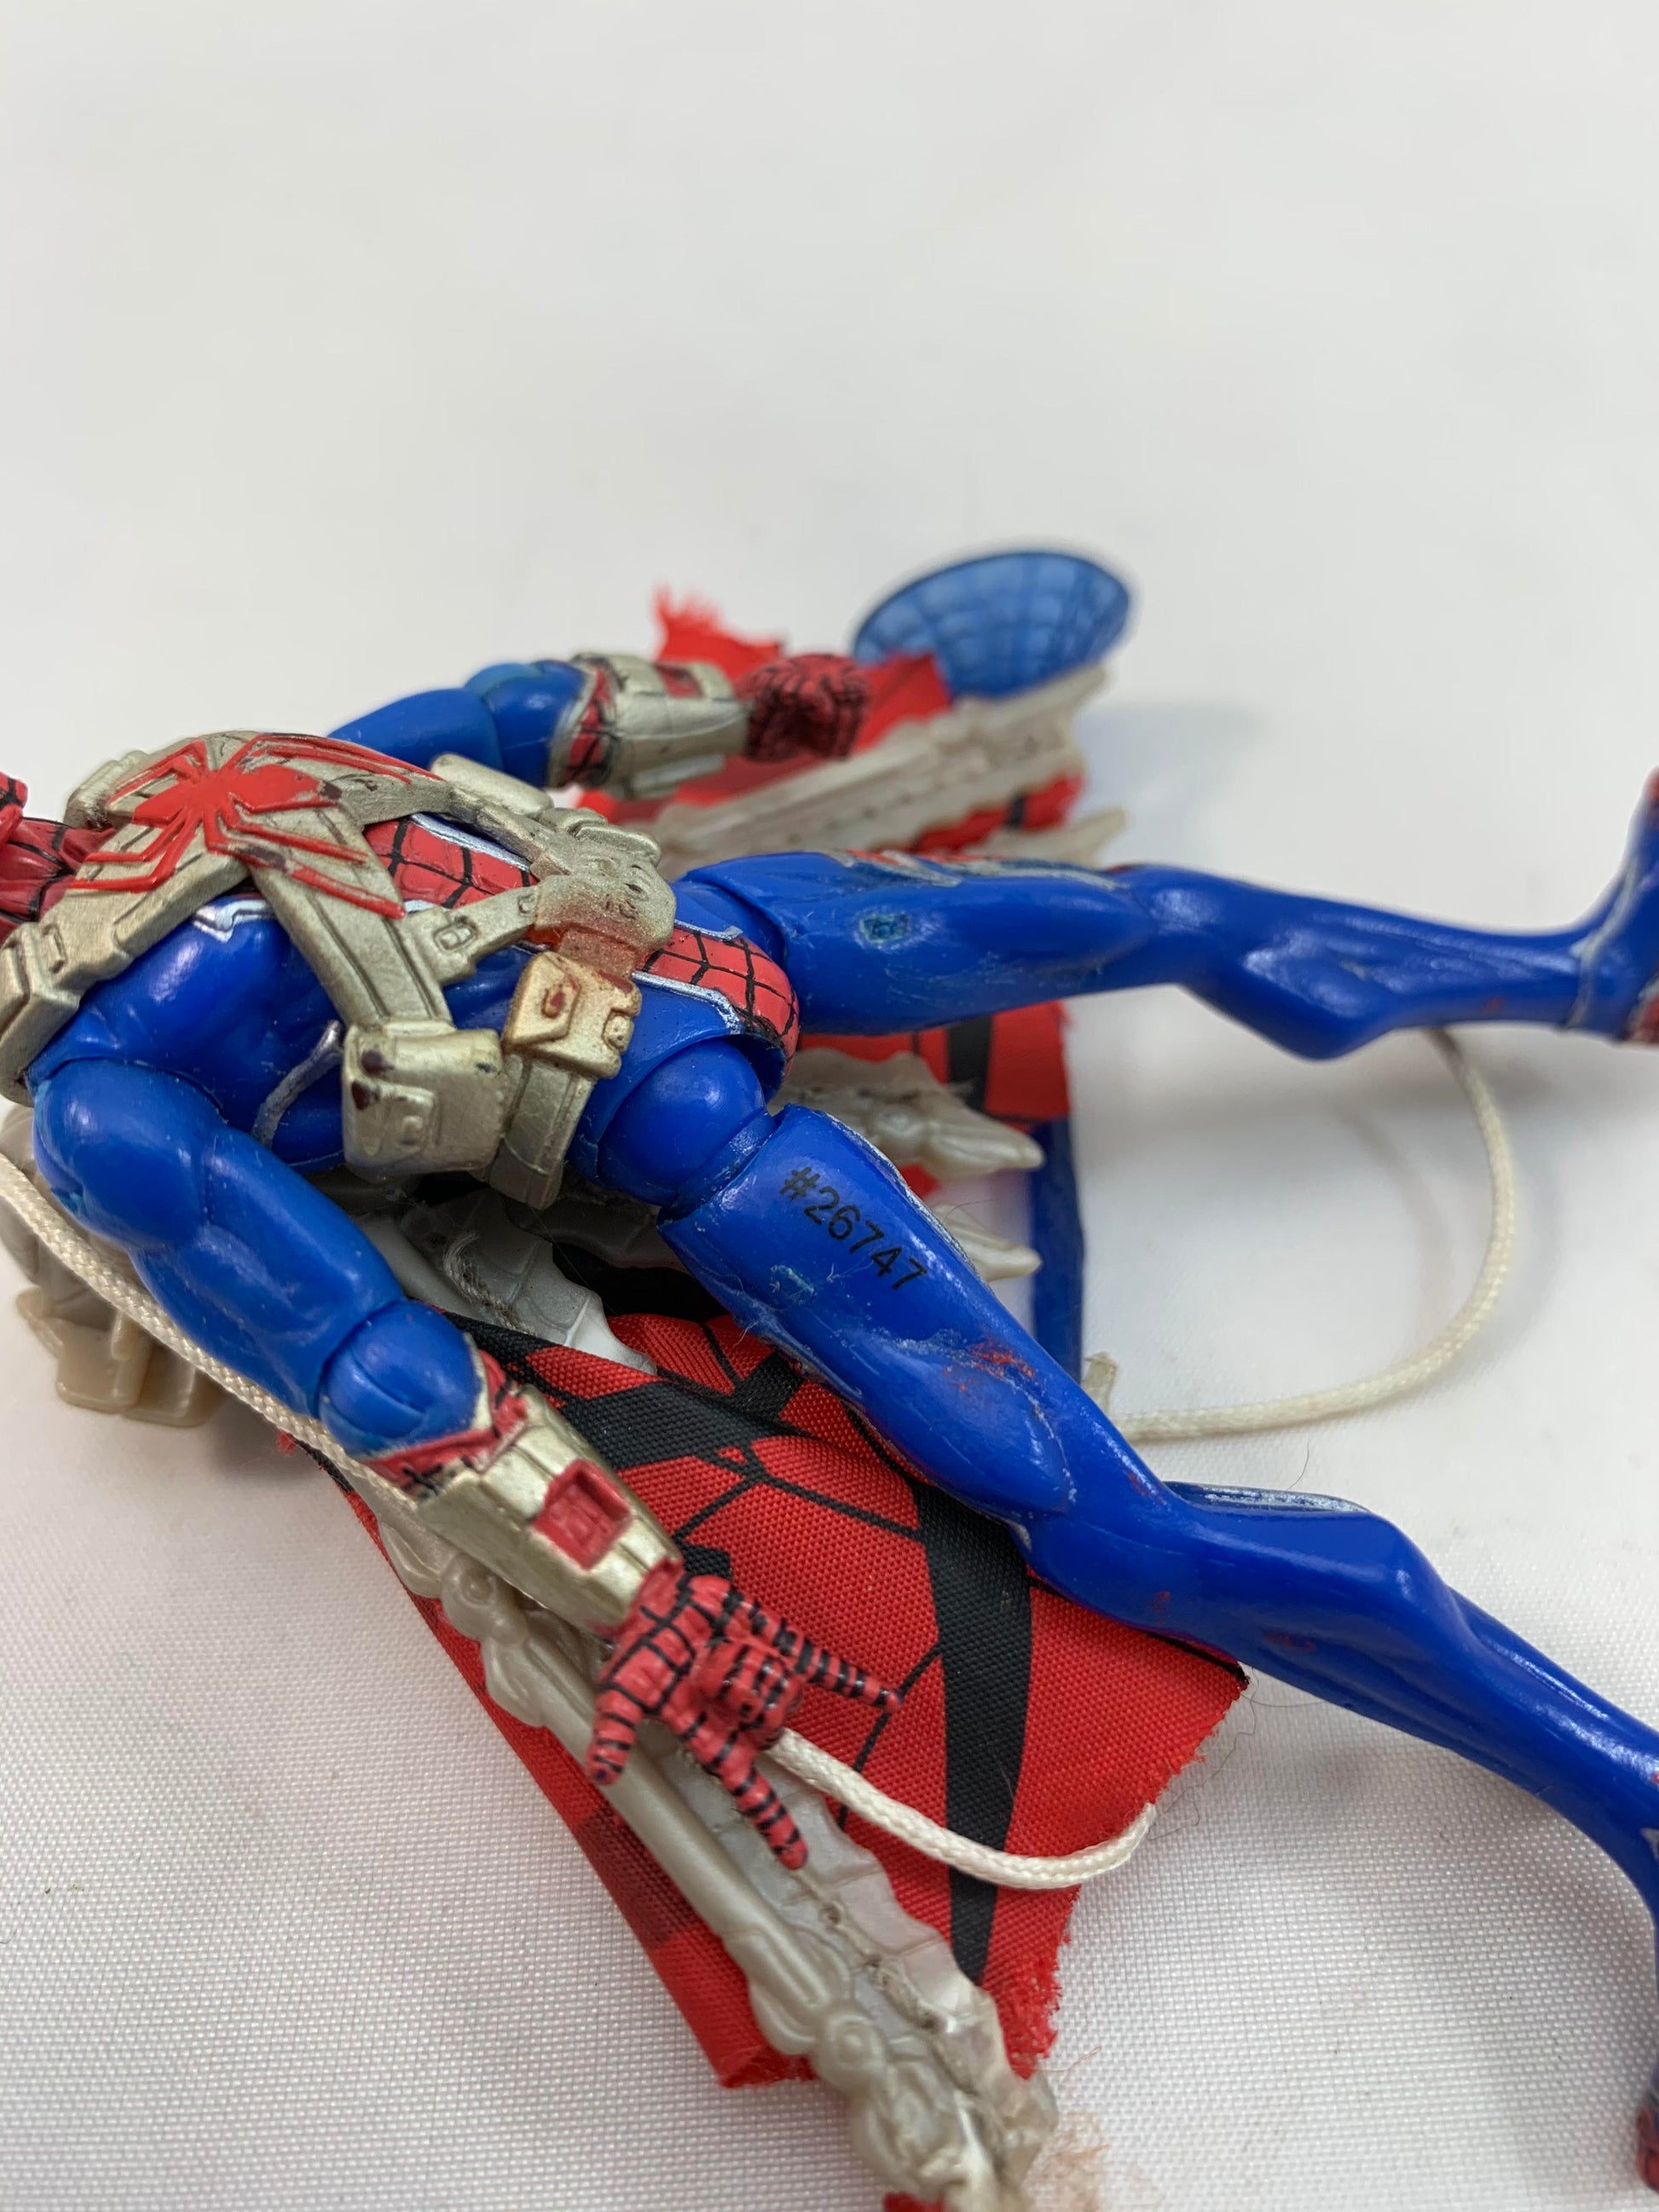 Hasbro Marvel Universe Spider-Man Web-Winged figure 2010 - Loose